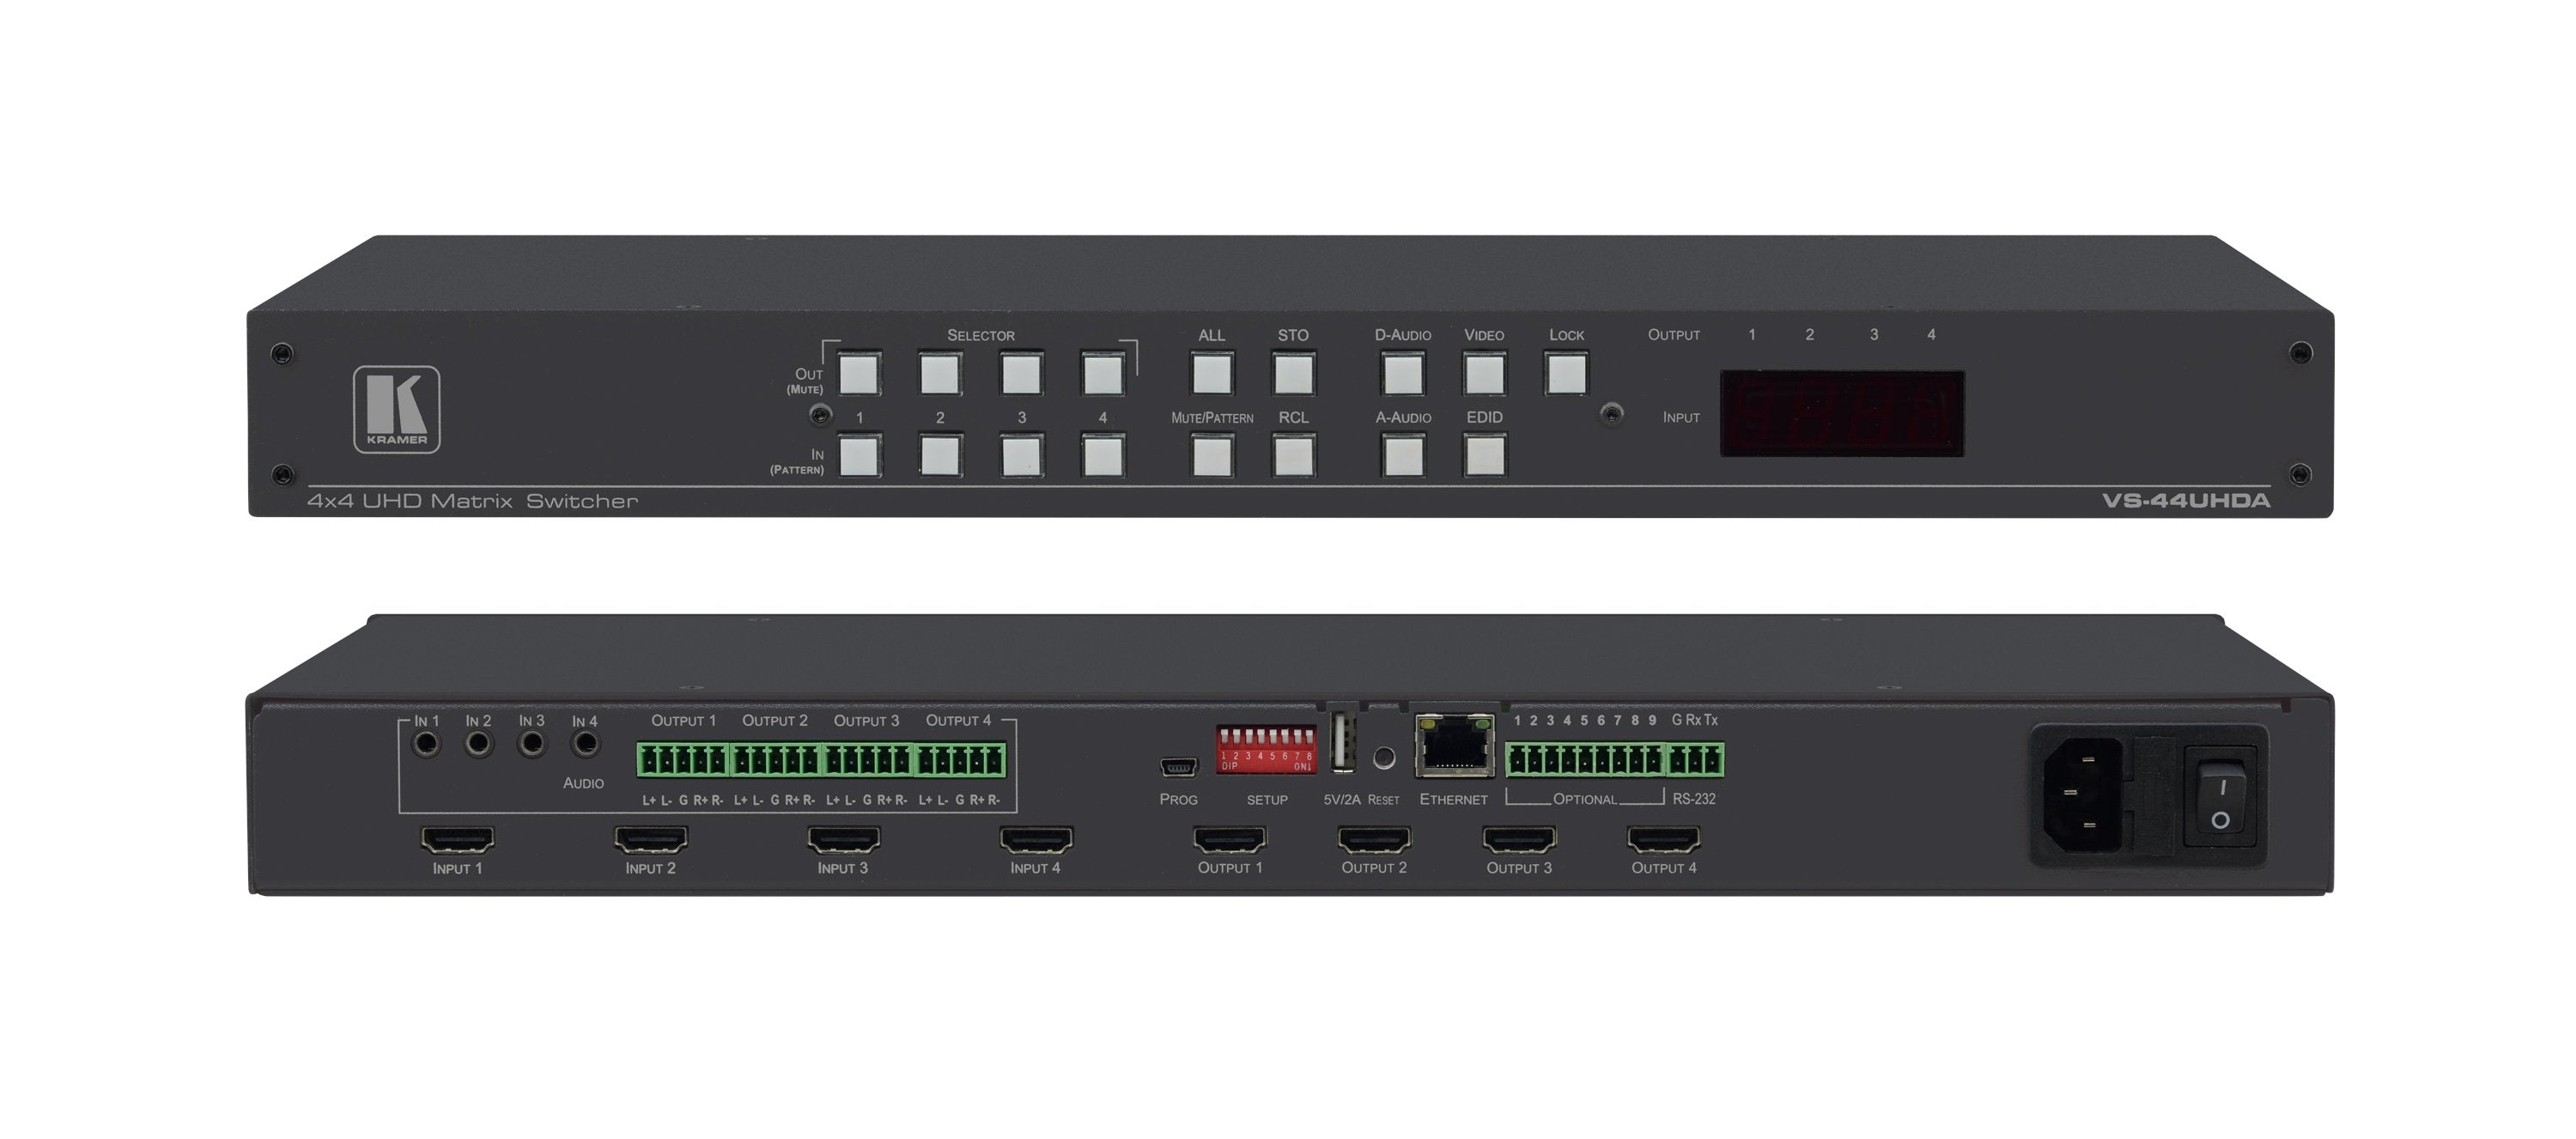 Kramer VS-44UHDA Switcher matricial de HDMI 4X4 4K con embebedores/desembedores de audio integrado Matriz de audio independiente, Función Step–In